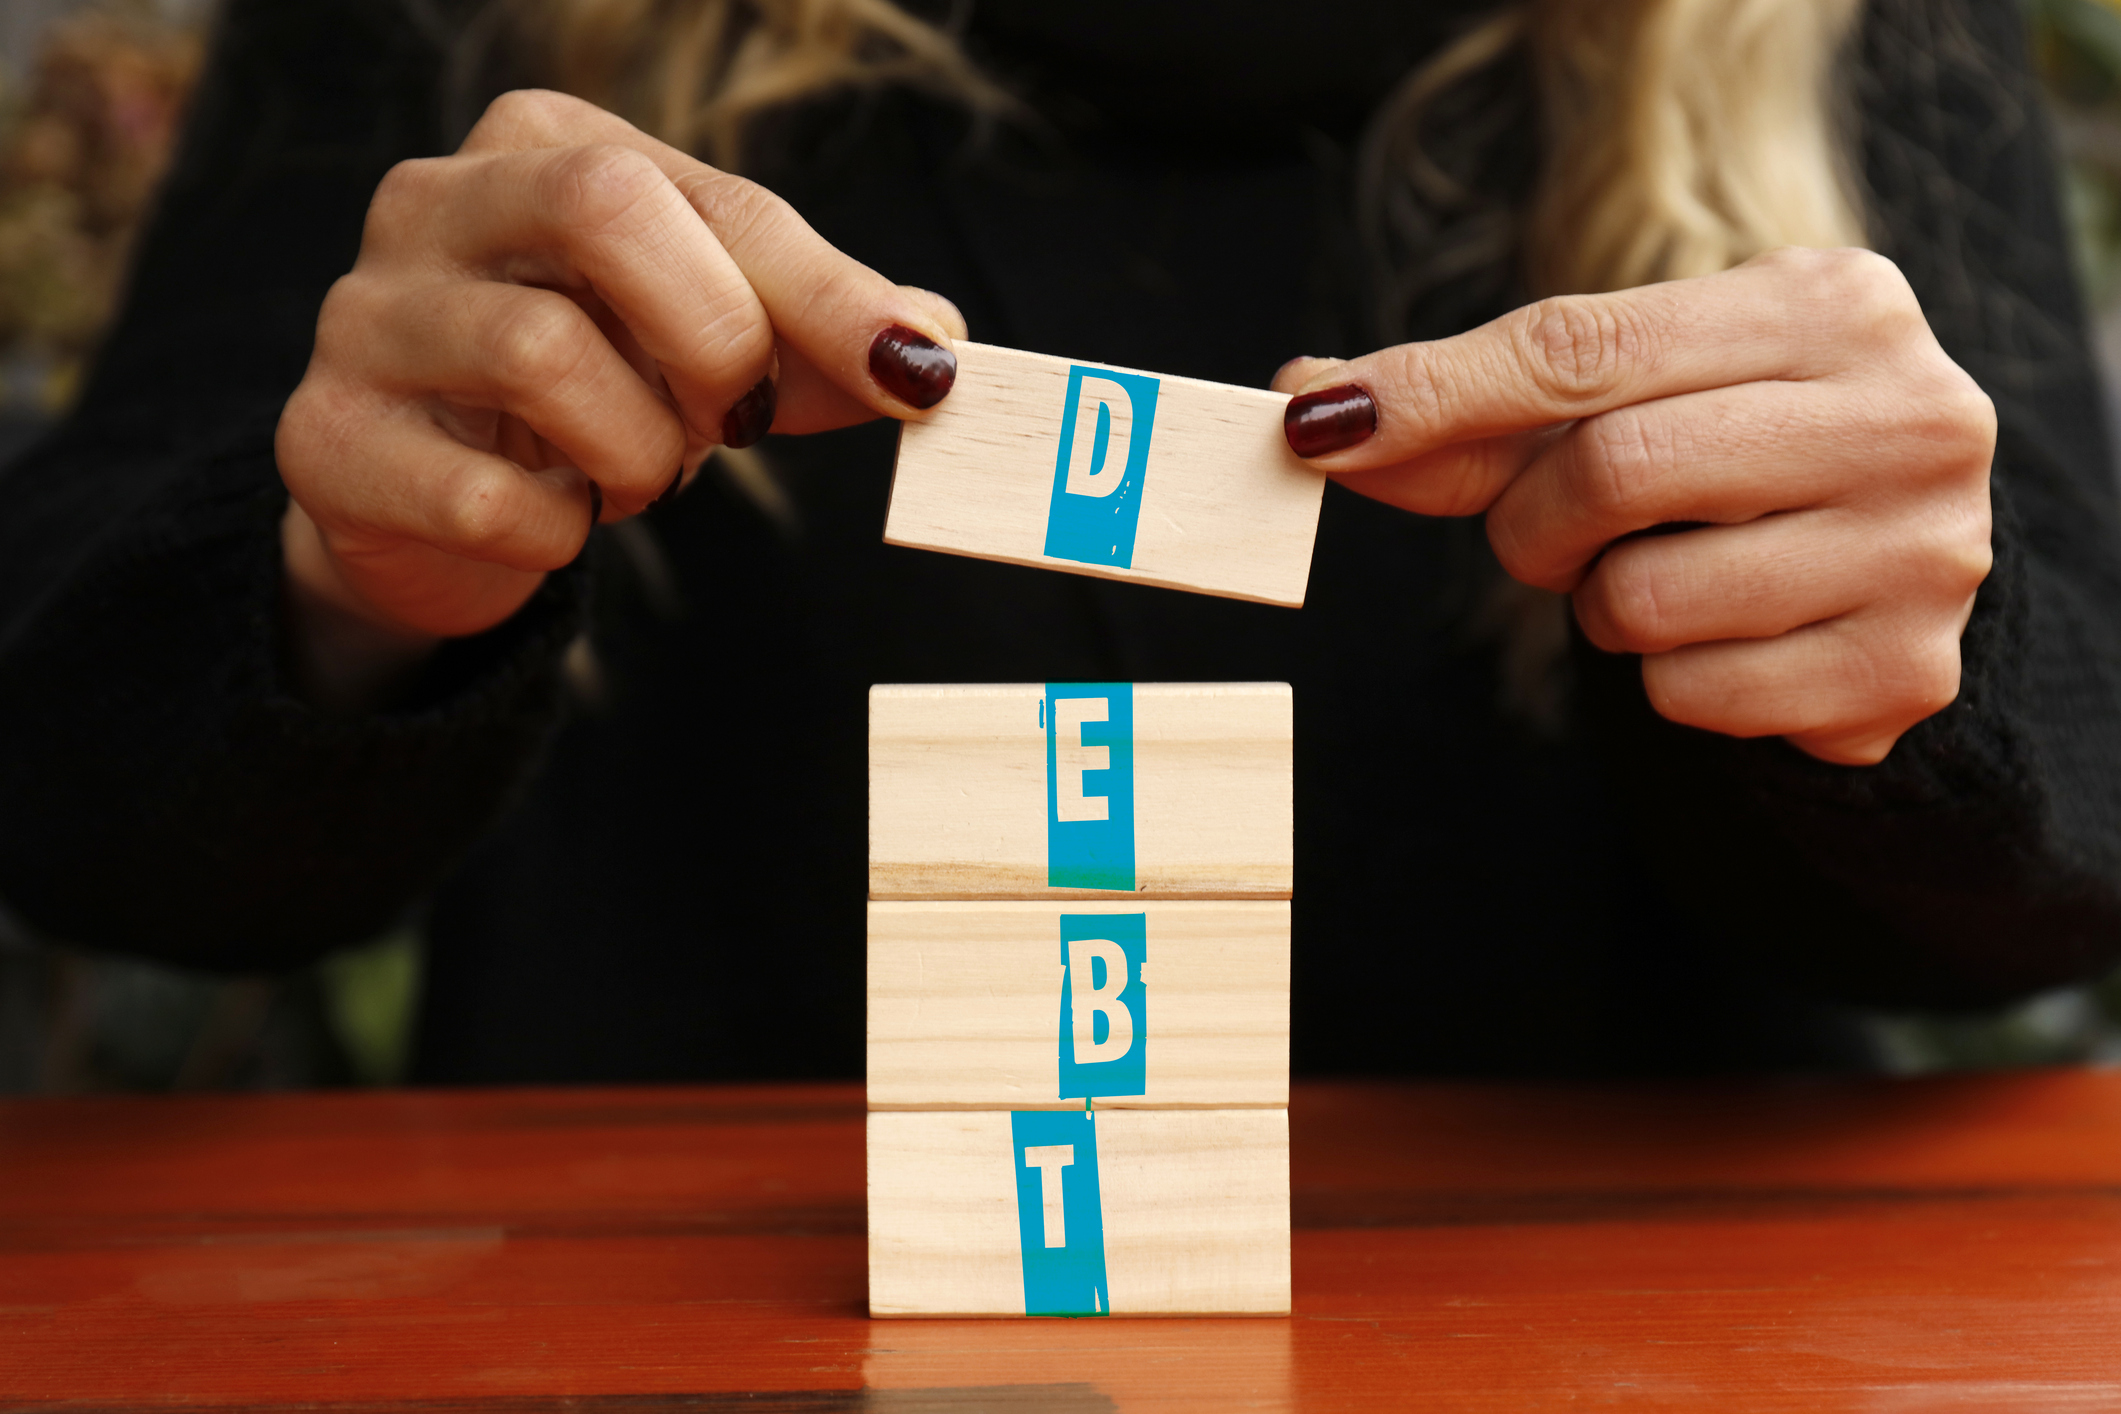 Blocks of wood spelling out debt